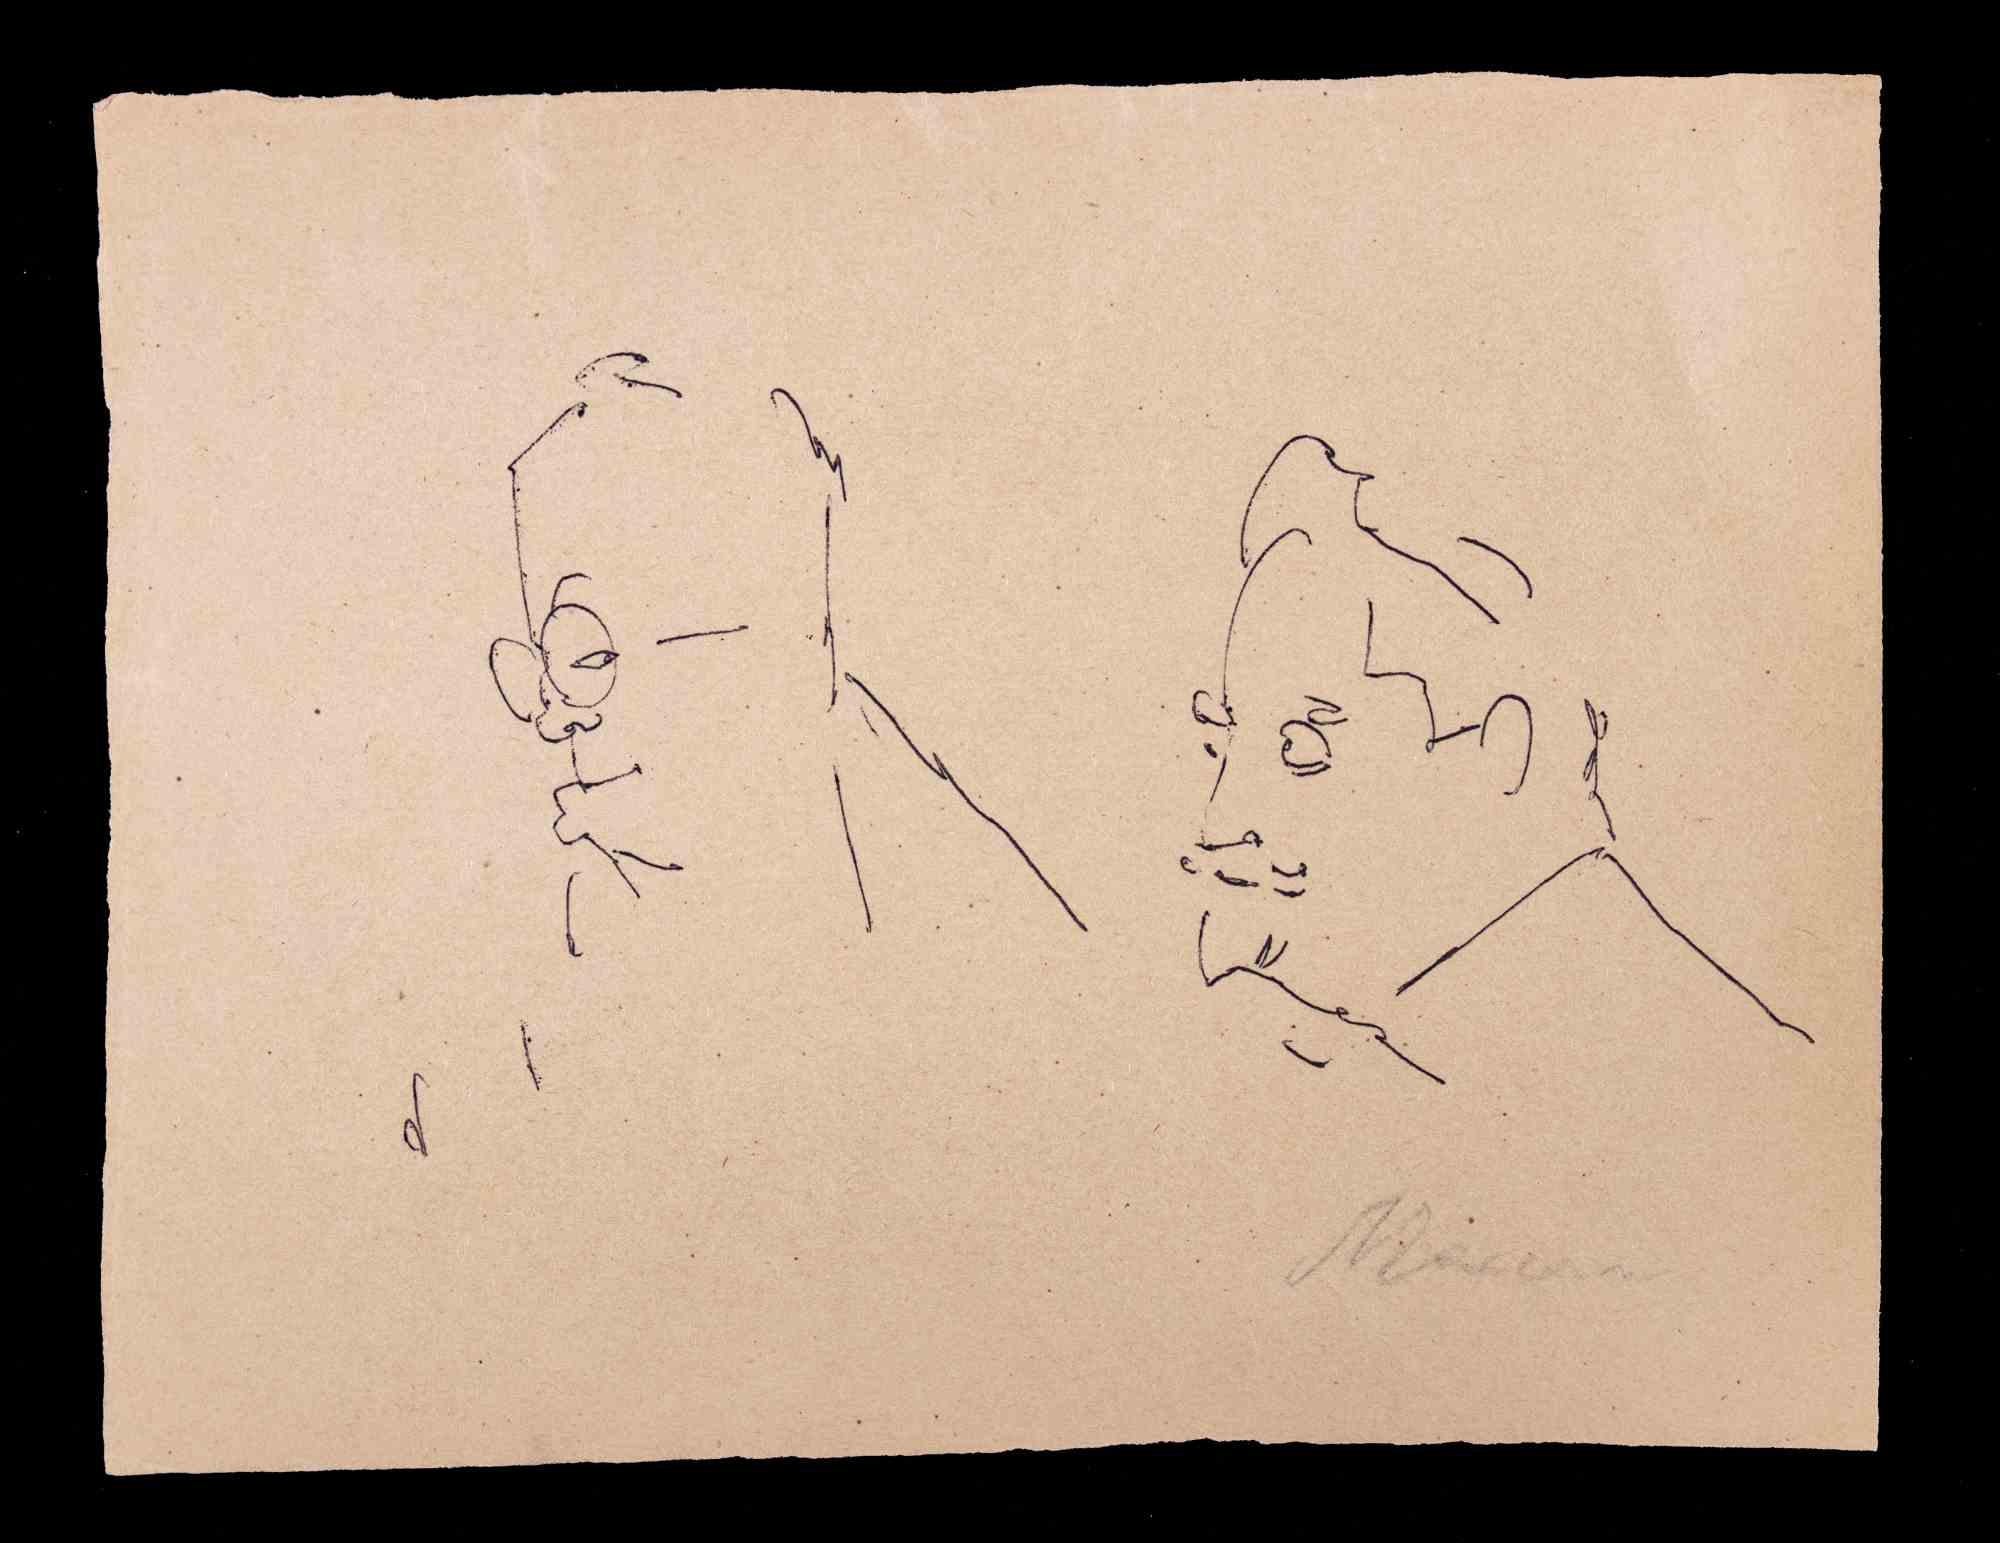 Portraits ist eine Federzeichnung von Mino Maccari  (1924-1989) in den 1960er Jahren.

Handsigniert am unteren Rand.

Guter Zustand auf vergilbtem Papier.

Mino Maccari (Siena, 1924-Rom, 16. Juni 1989) war ein italienischer Schriftsteller, Maler,